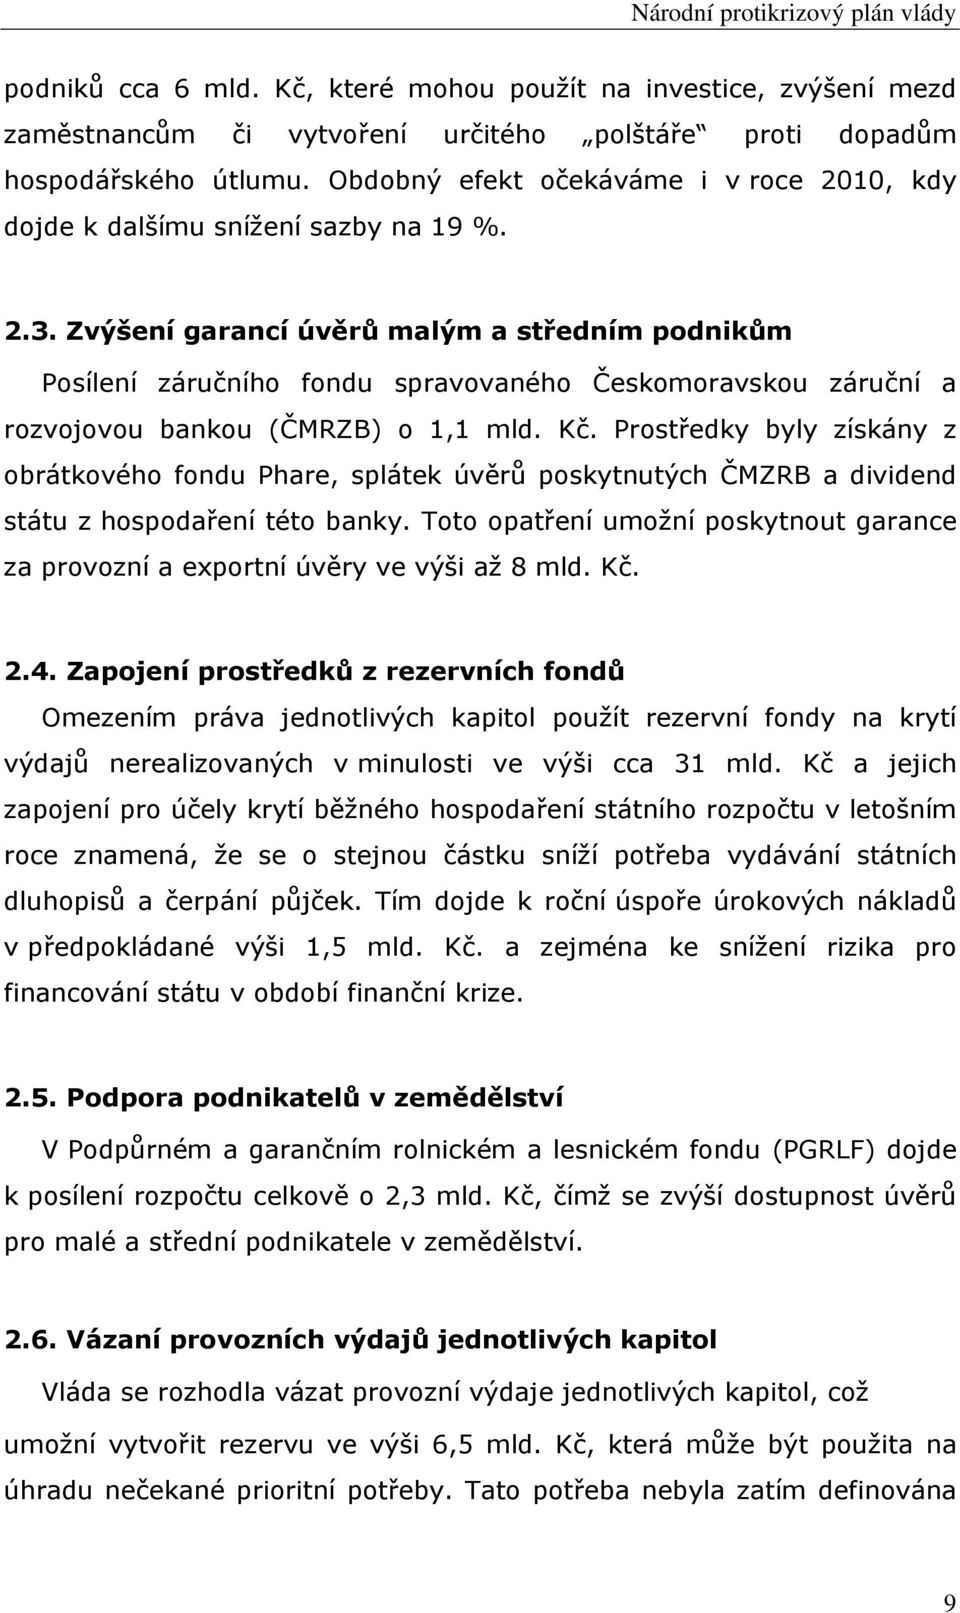 Zvýšení garancí úvěrů malým a středním podnikům Posílení záručního fondu spravovaného Českomoravskou záruční a rozvojovou bankou (ČMRZB) o 1,1 mld. Kč.